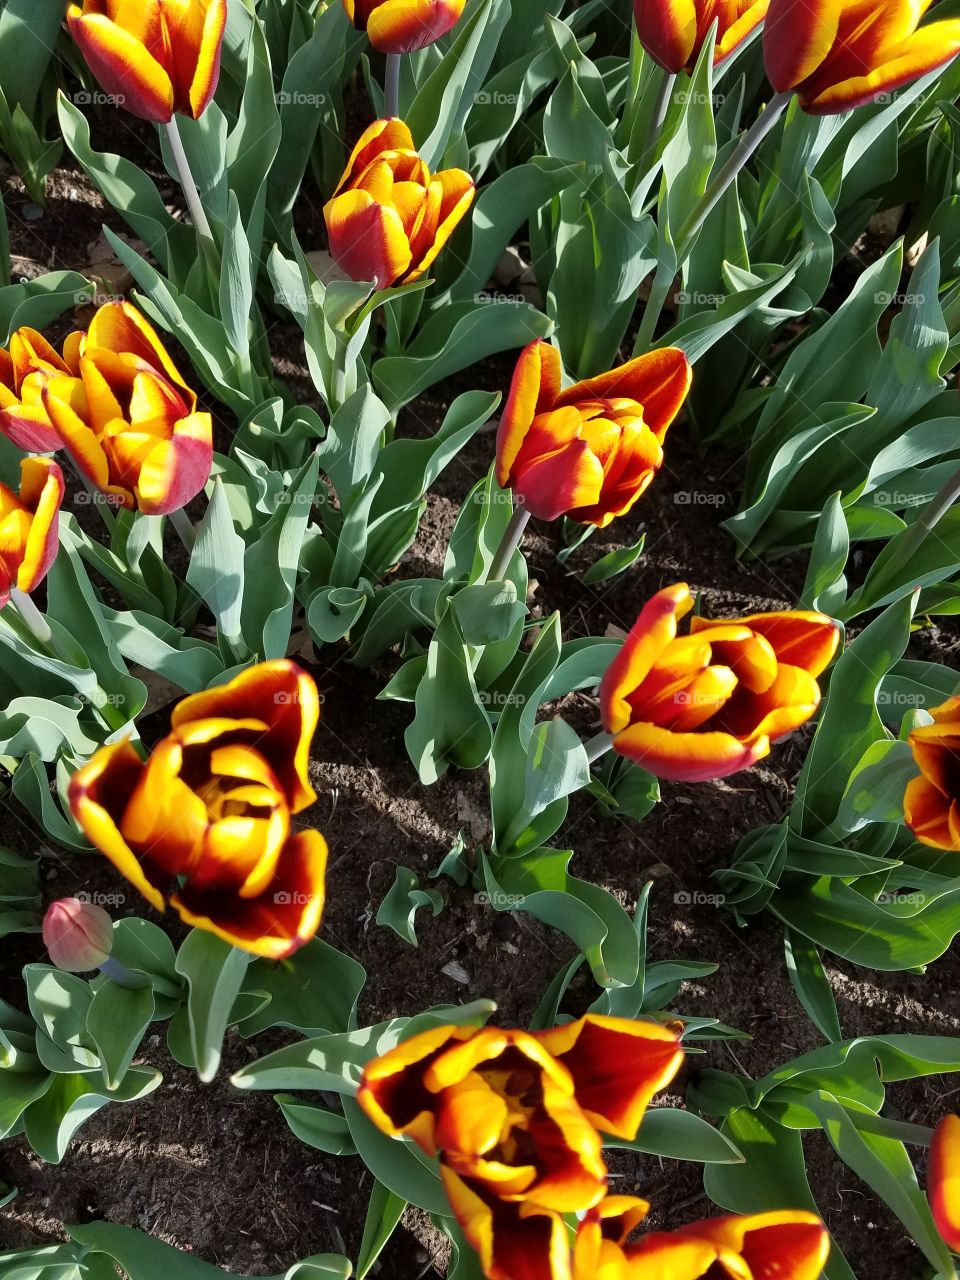 Washington Park Tulips